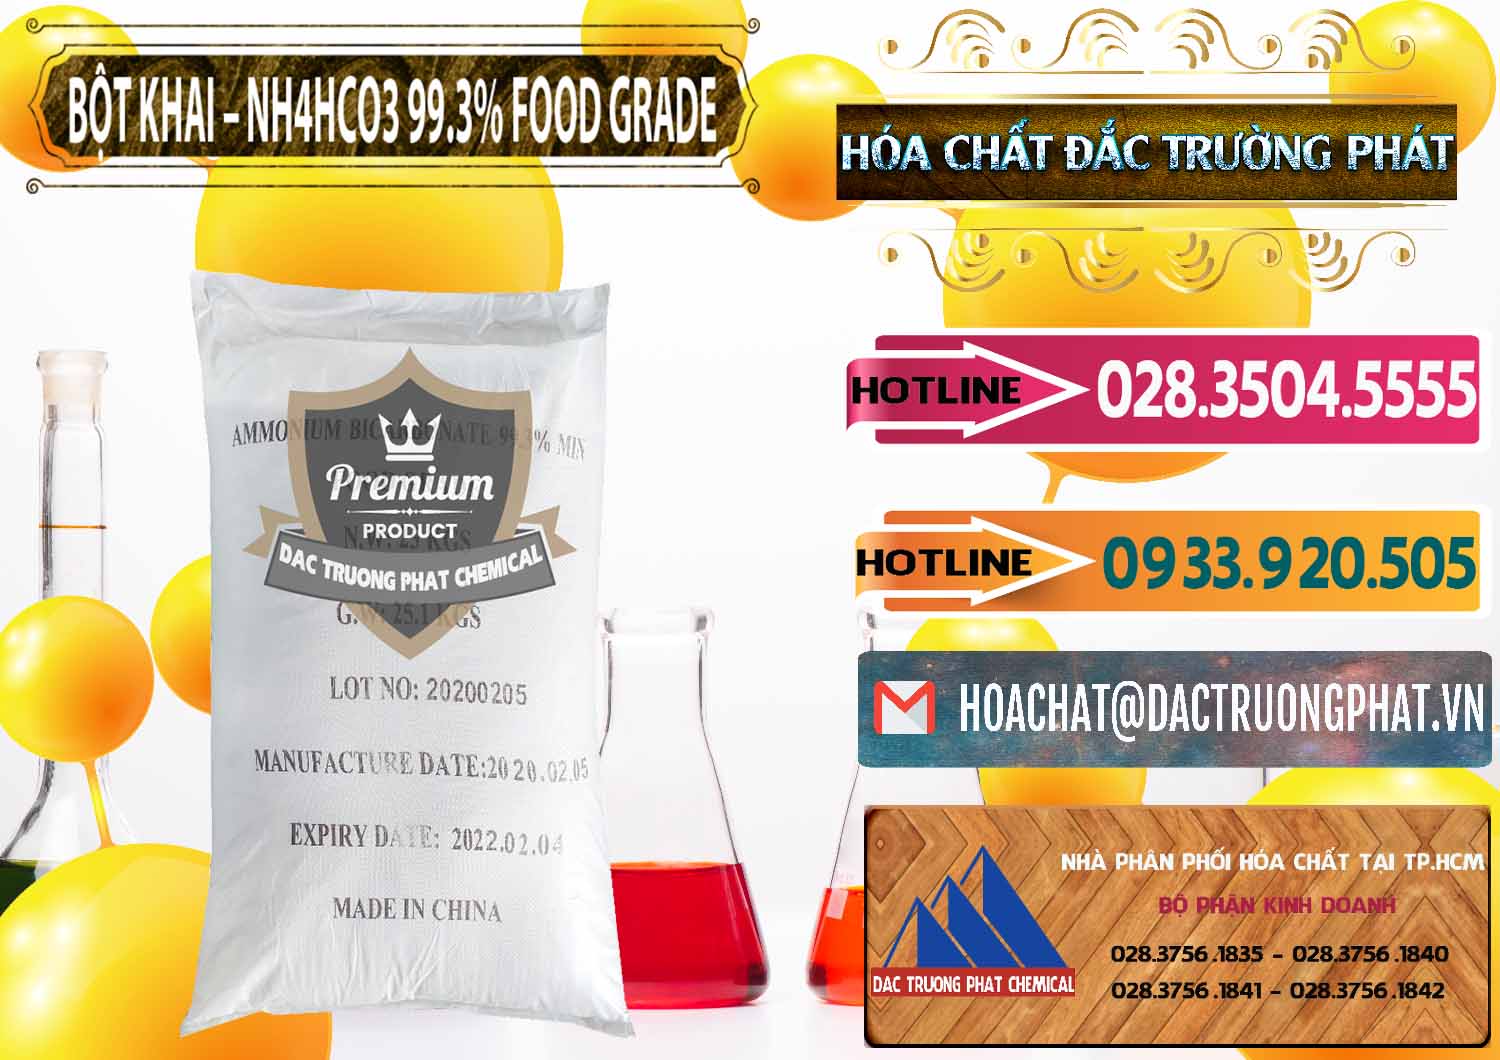 Cty chuyên bán & phân phối Ammonium Bicarbonate – Bột Khai NH4HCO3 Food Grade Trung Quốc China - 0019 - Công ty chuyên cung cấp và bán hóa chất tại TP.HCM - dactruongphat.vn